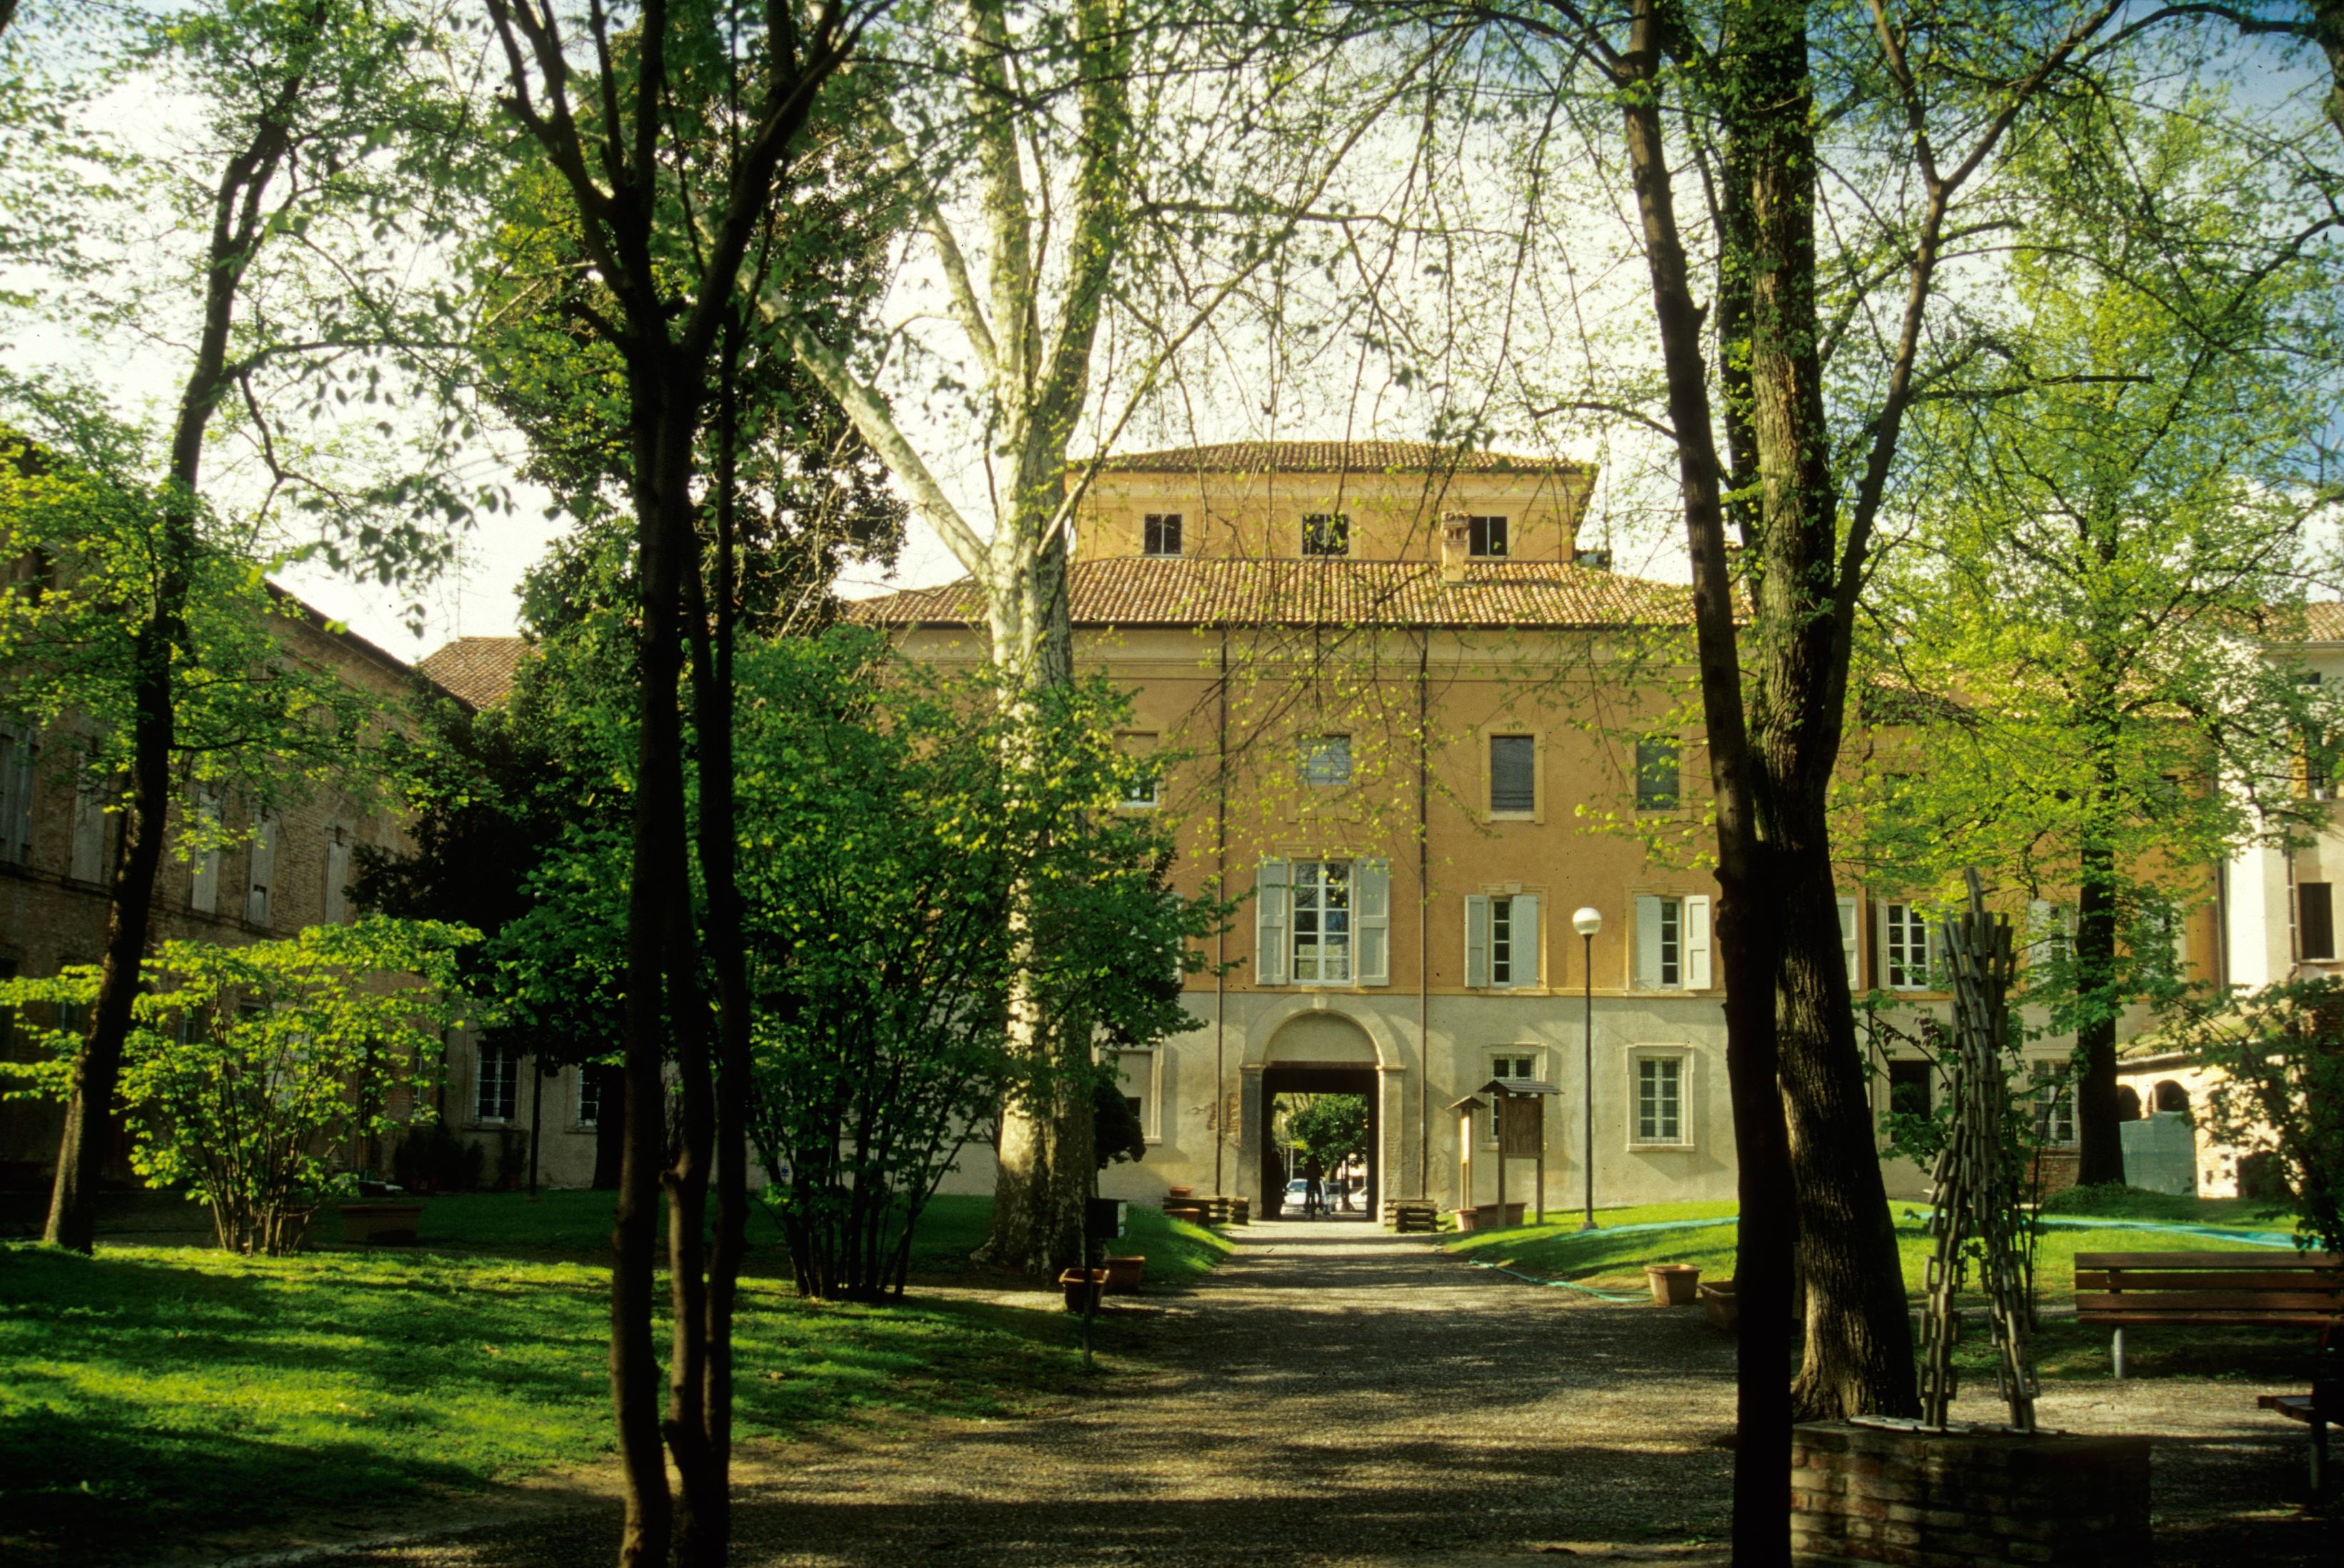 photo: https://upload.wikimedia.org/wikipedia/commons/3/38/Palazzo_Sartoretti_e_parco_in_primavera.JPG